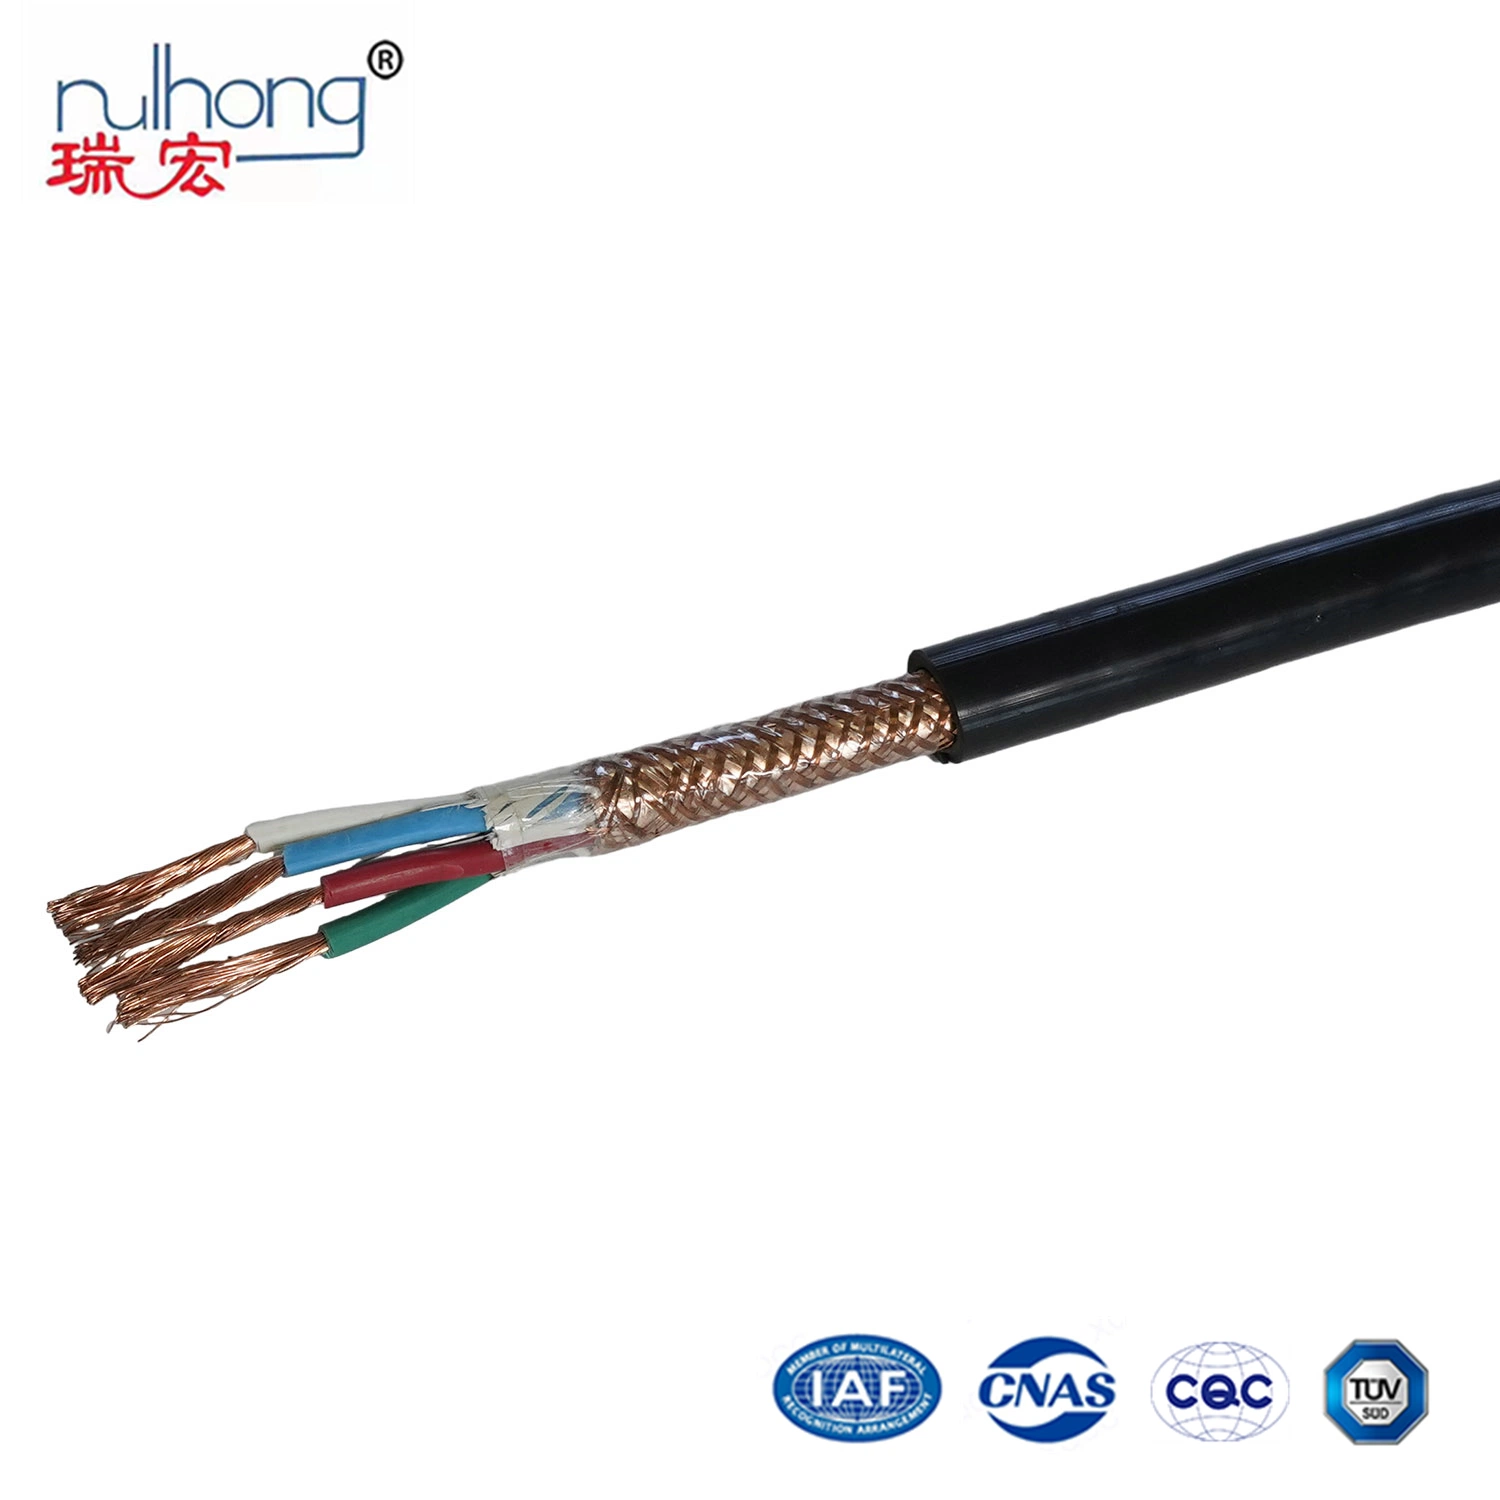 450/750V Fil électrique et câble de commande à âme en cuivre/aluminium flexible, isolé en PVC et gainé en PE.